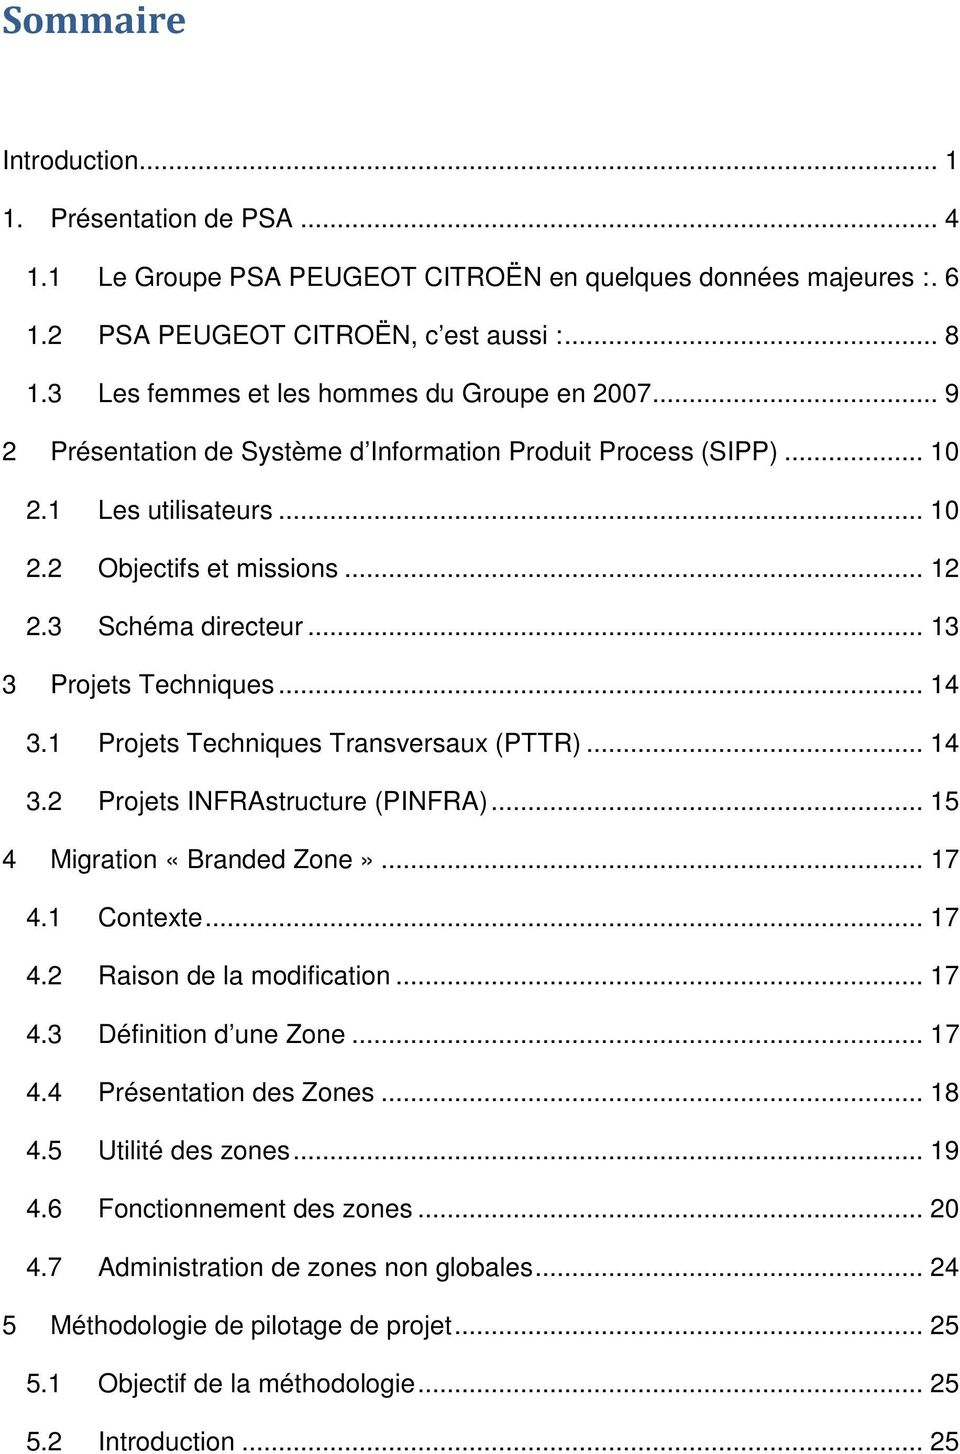 .. 13 3 Projets Techniques... 14 3.1 Projets Techniques Transversaux (PTTR)... 14 3.2 Projets INFRAstructure (PINFRA)... 15 4 Migration «Branded Zone»... 17 4.1 Contexte... 17 4.2 Raison de la modification.